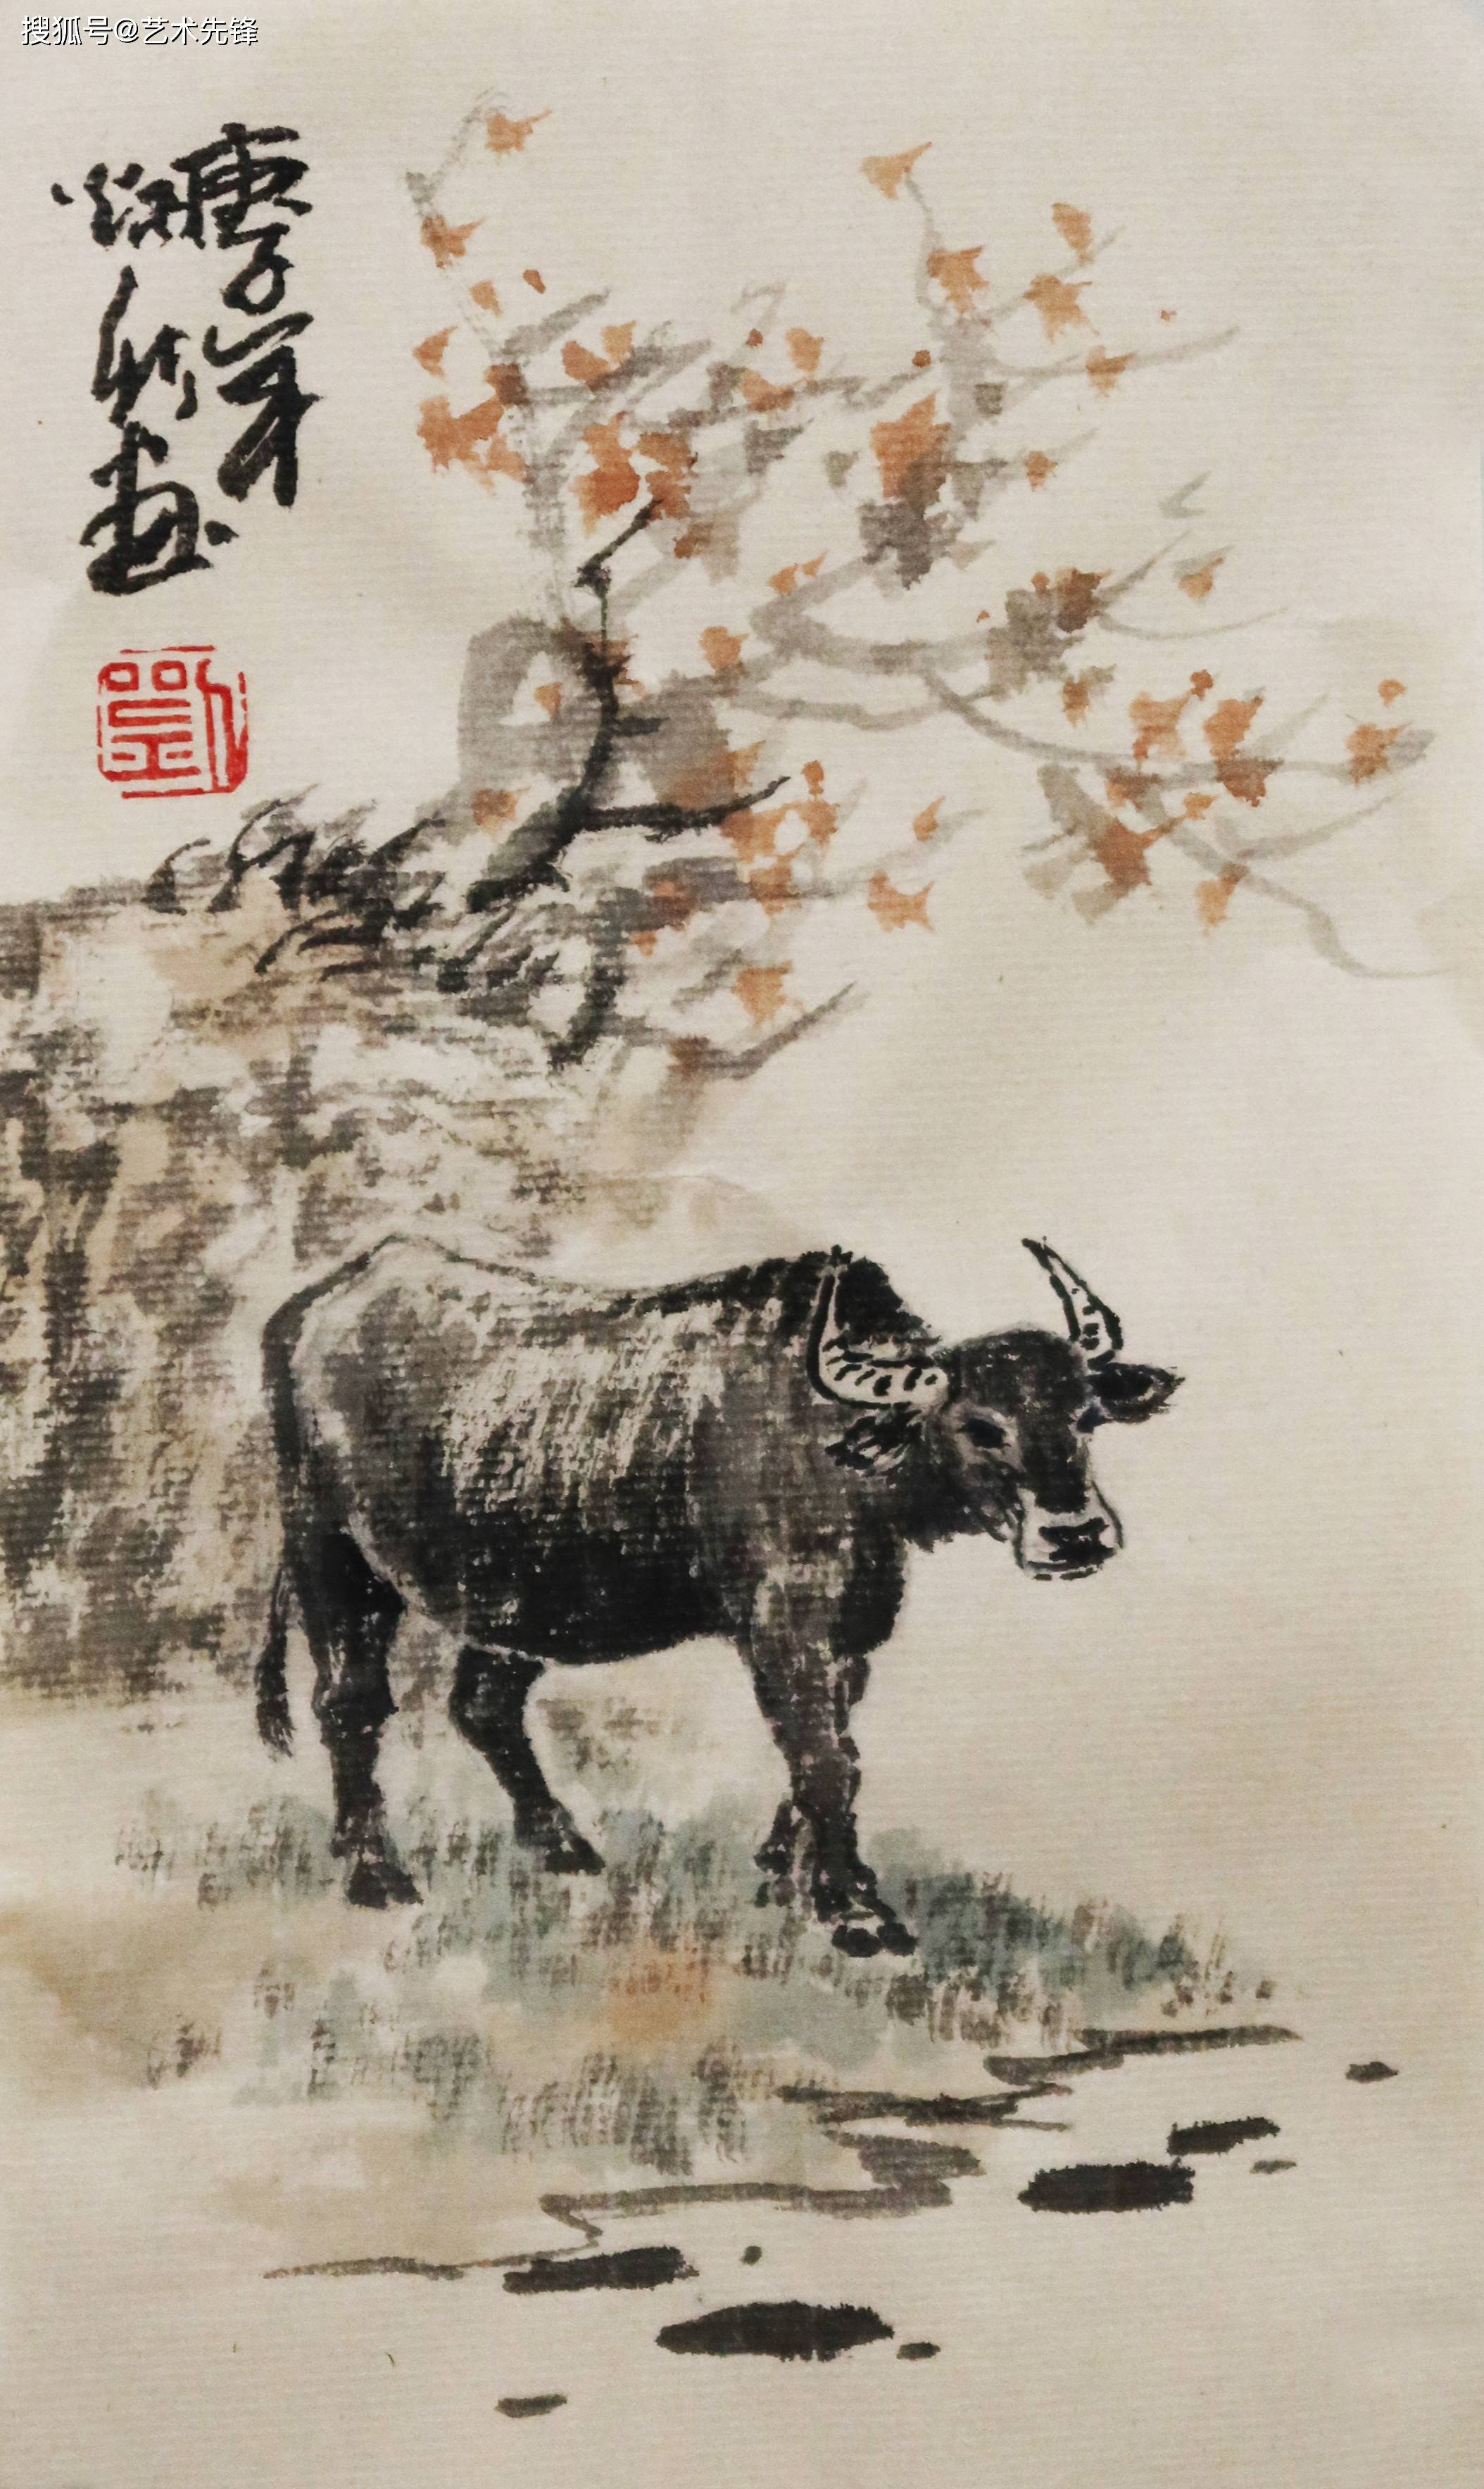 1968年生于河南省柘城县,自幼受名家指导学习中国传统画技法,习画三十